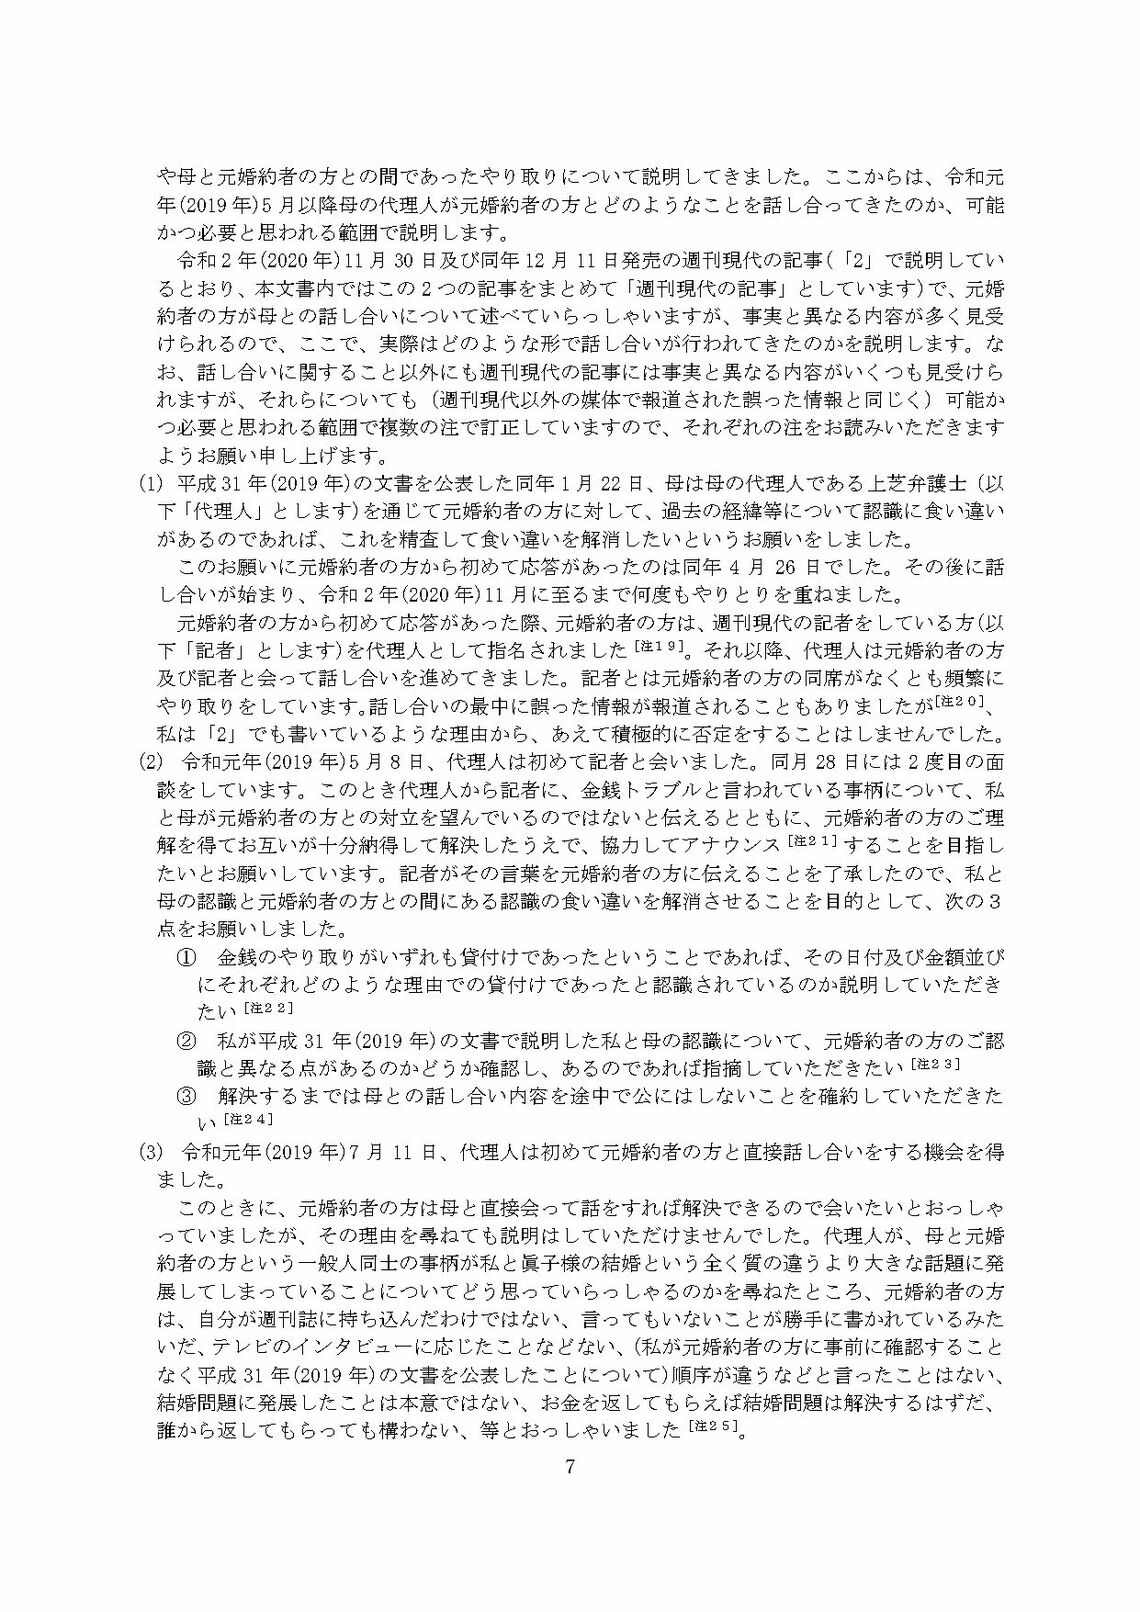 小室圭氏の代理人より届いた文書本文（7ページ目）（写真：週刊女性PRIME）